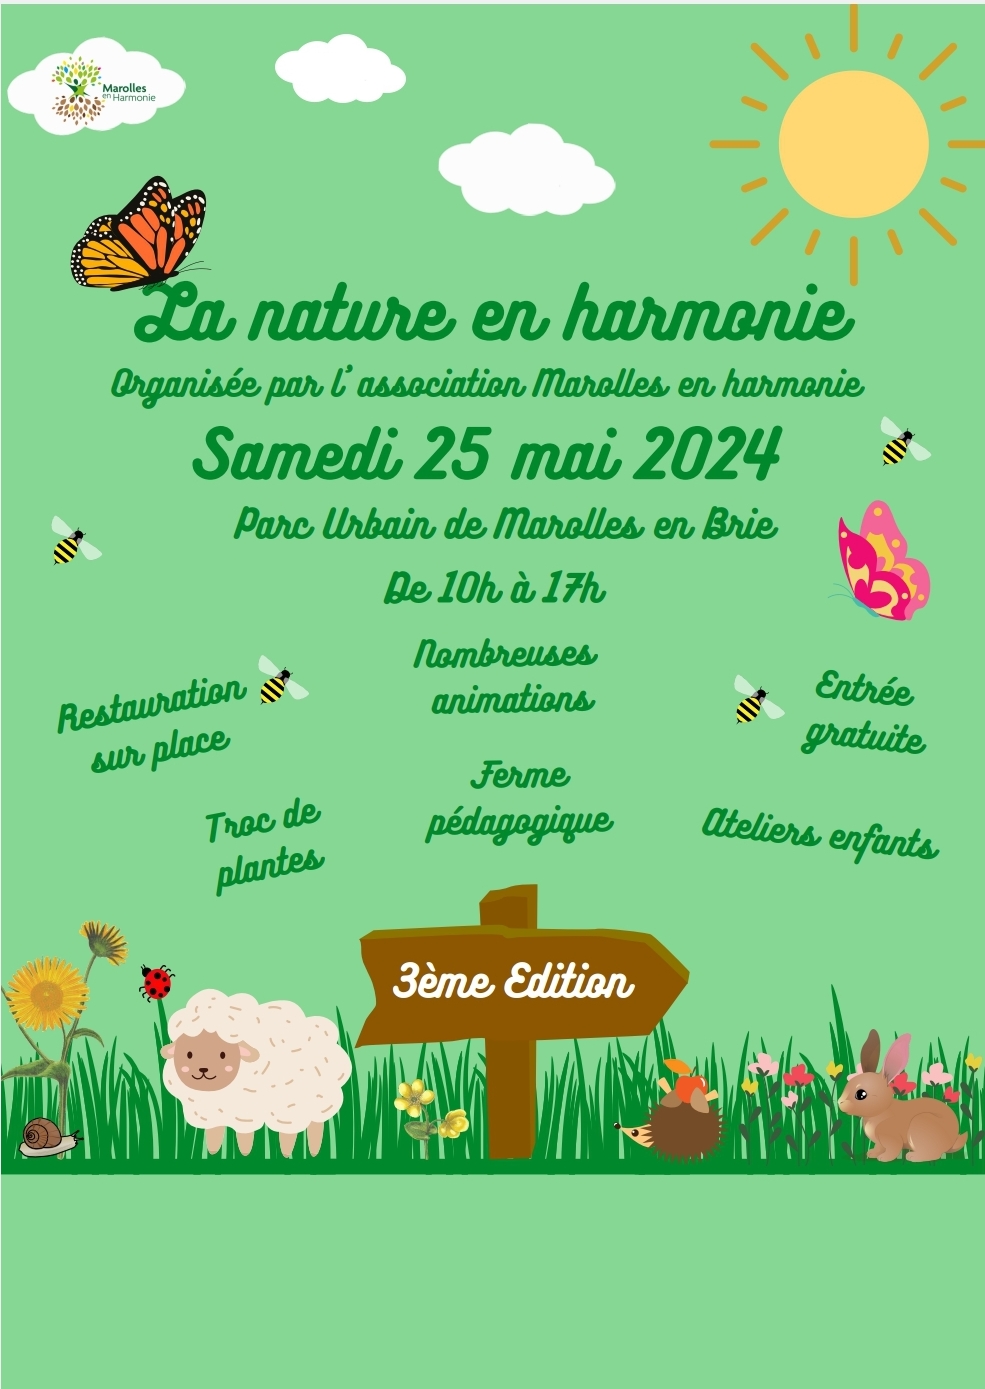 La Nature en Harmonie à Marolles Le 25 mai 2024